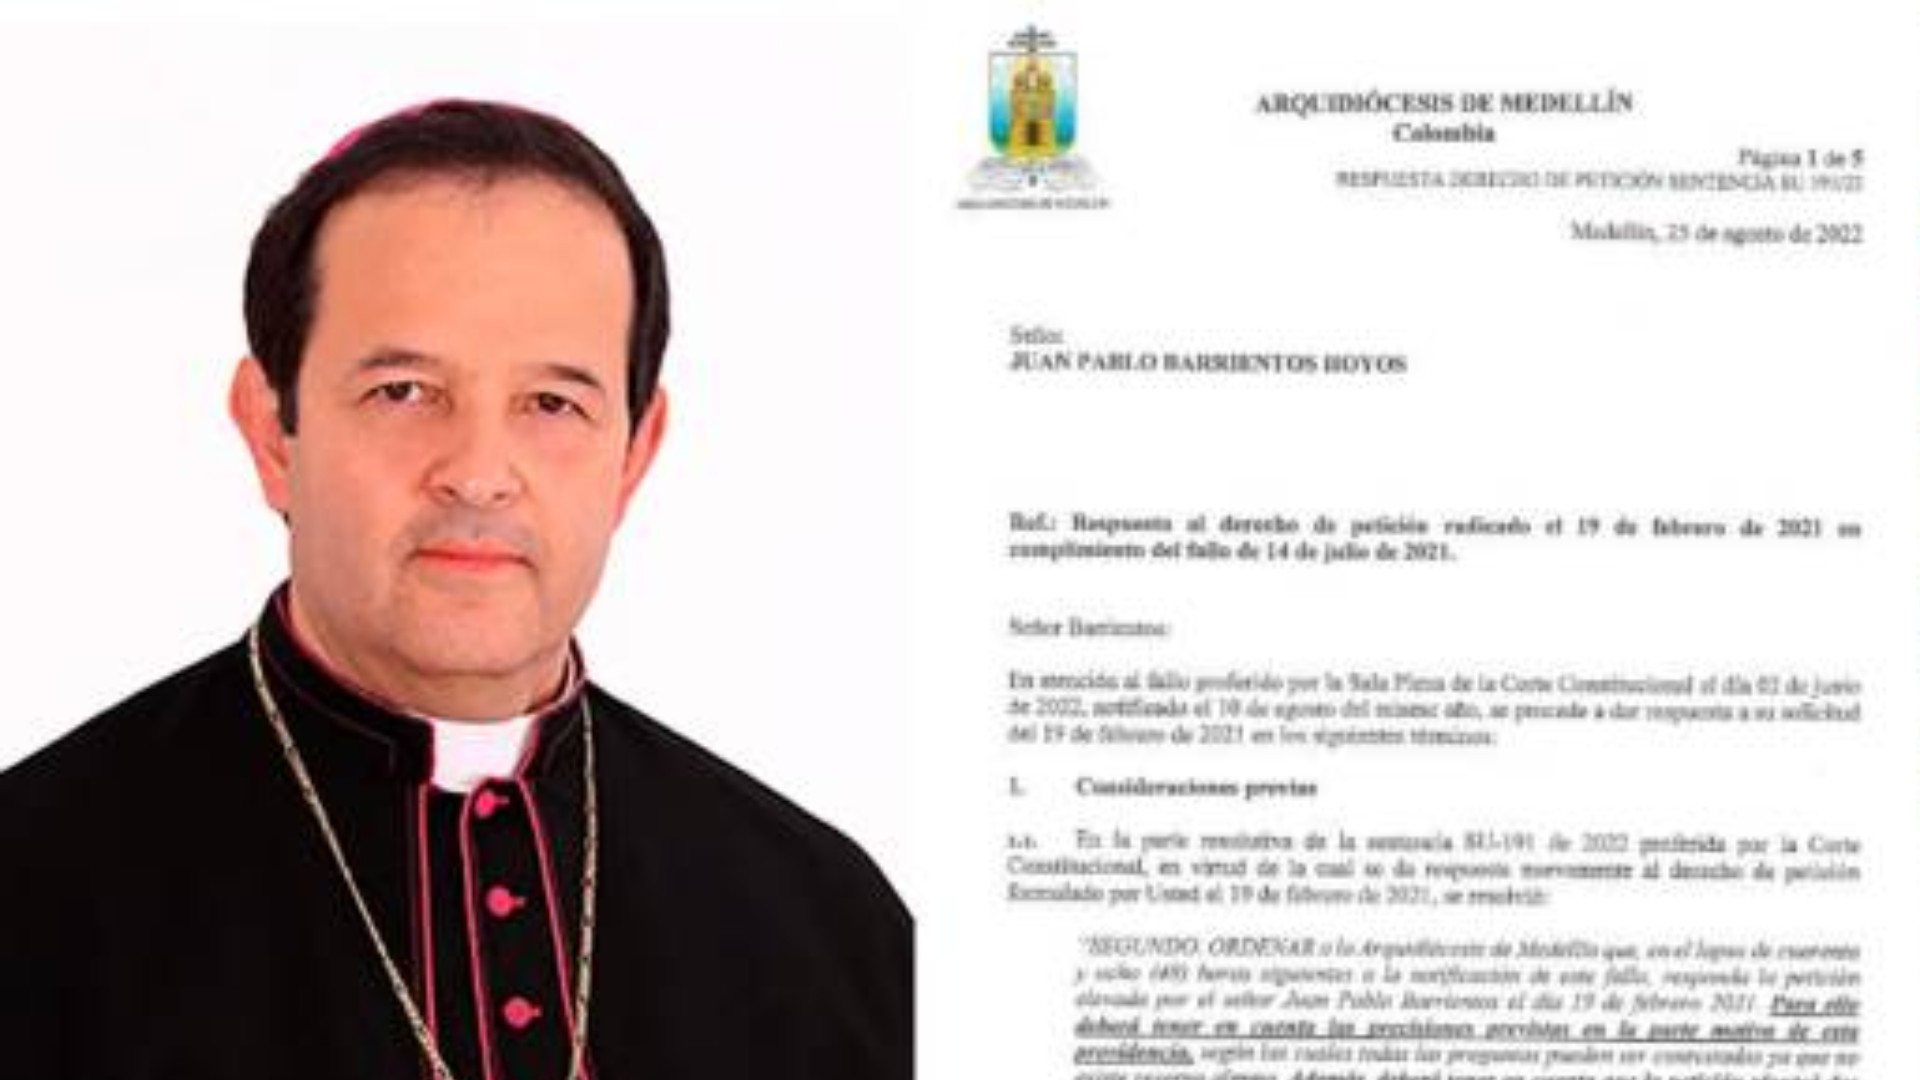 Mgr Ricardo Tobón Restrepo, archevêque de Medellín, a rendu public le rapport réclamé par le journaliste Juan Pablo Barrientos | archevêché de Medellin